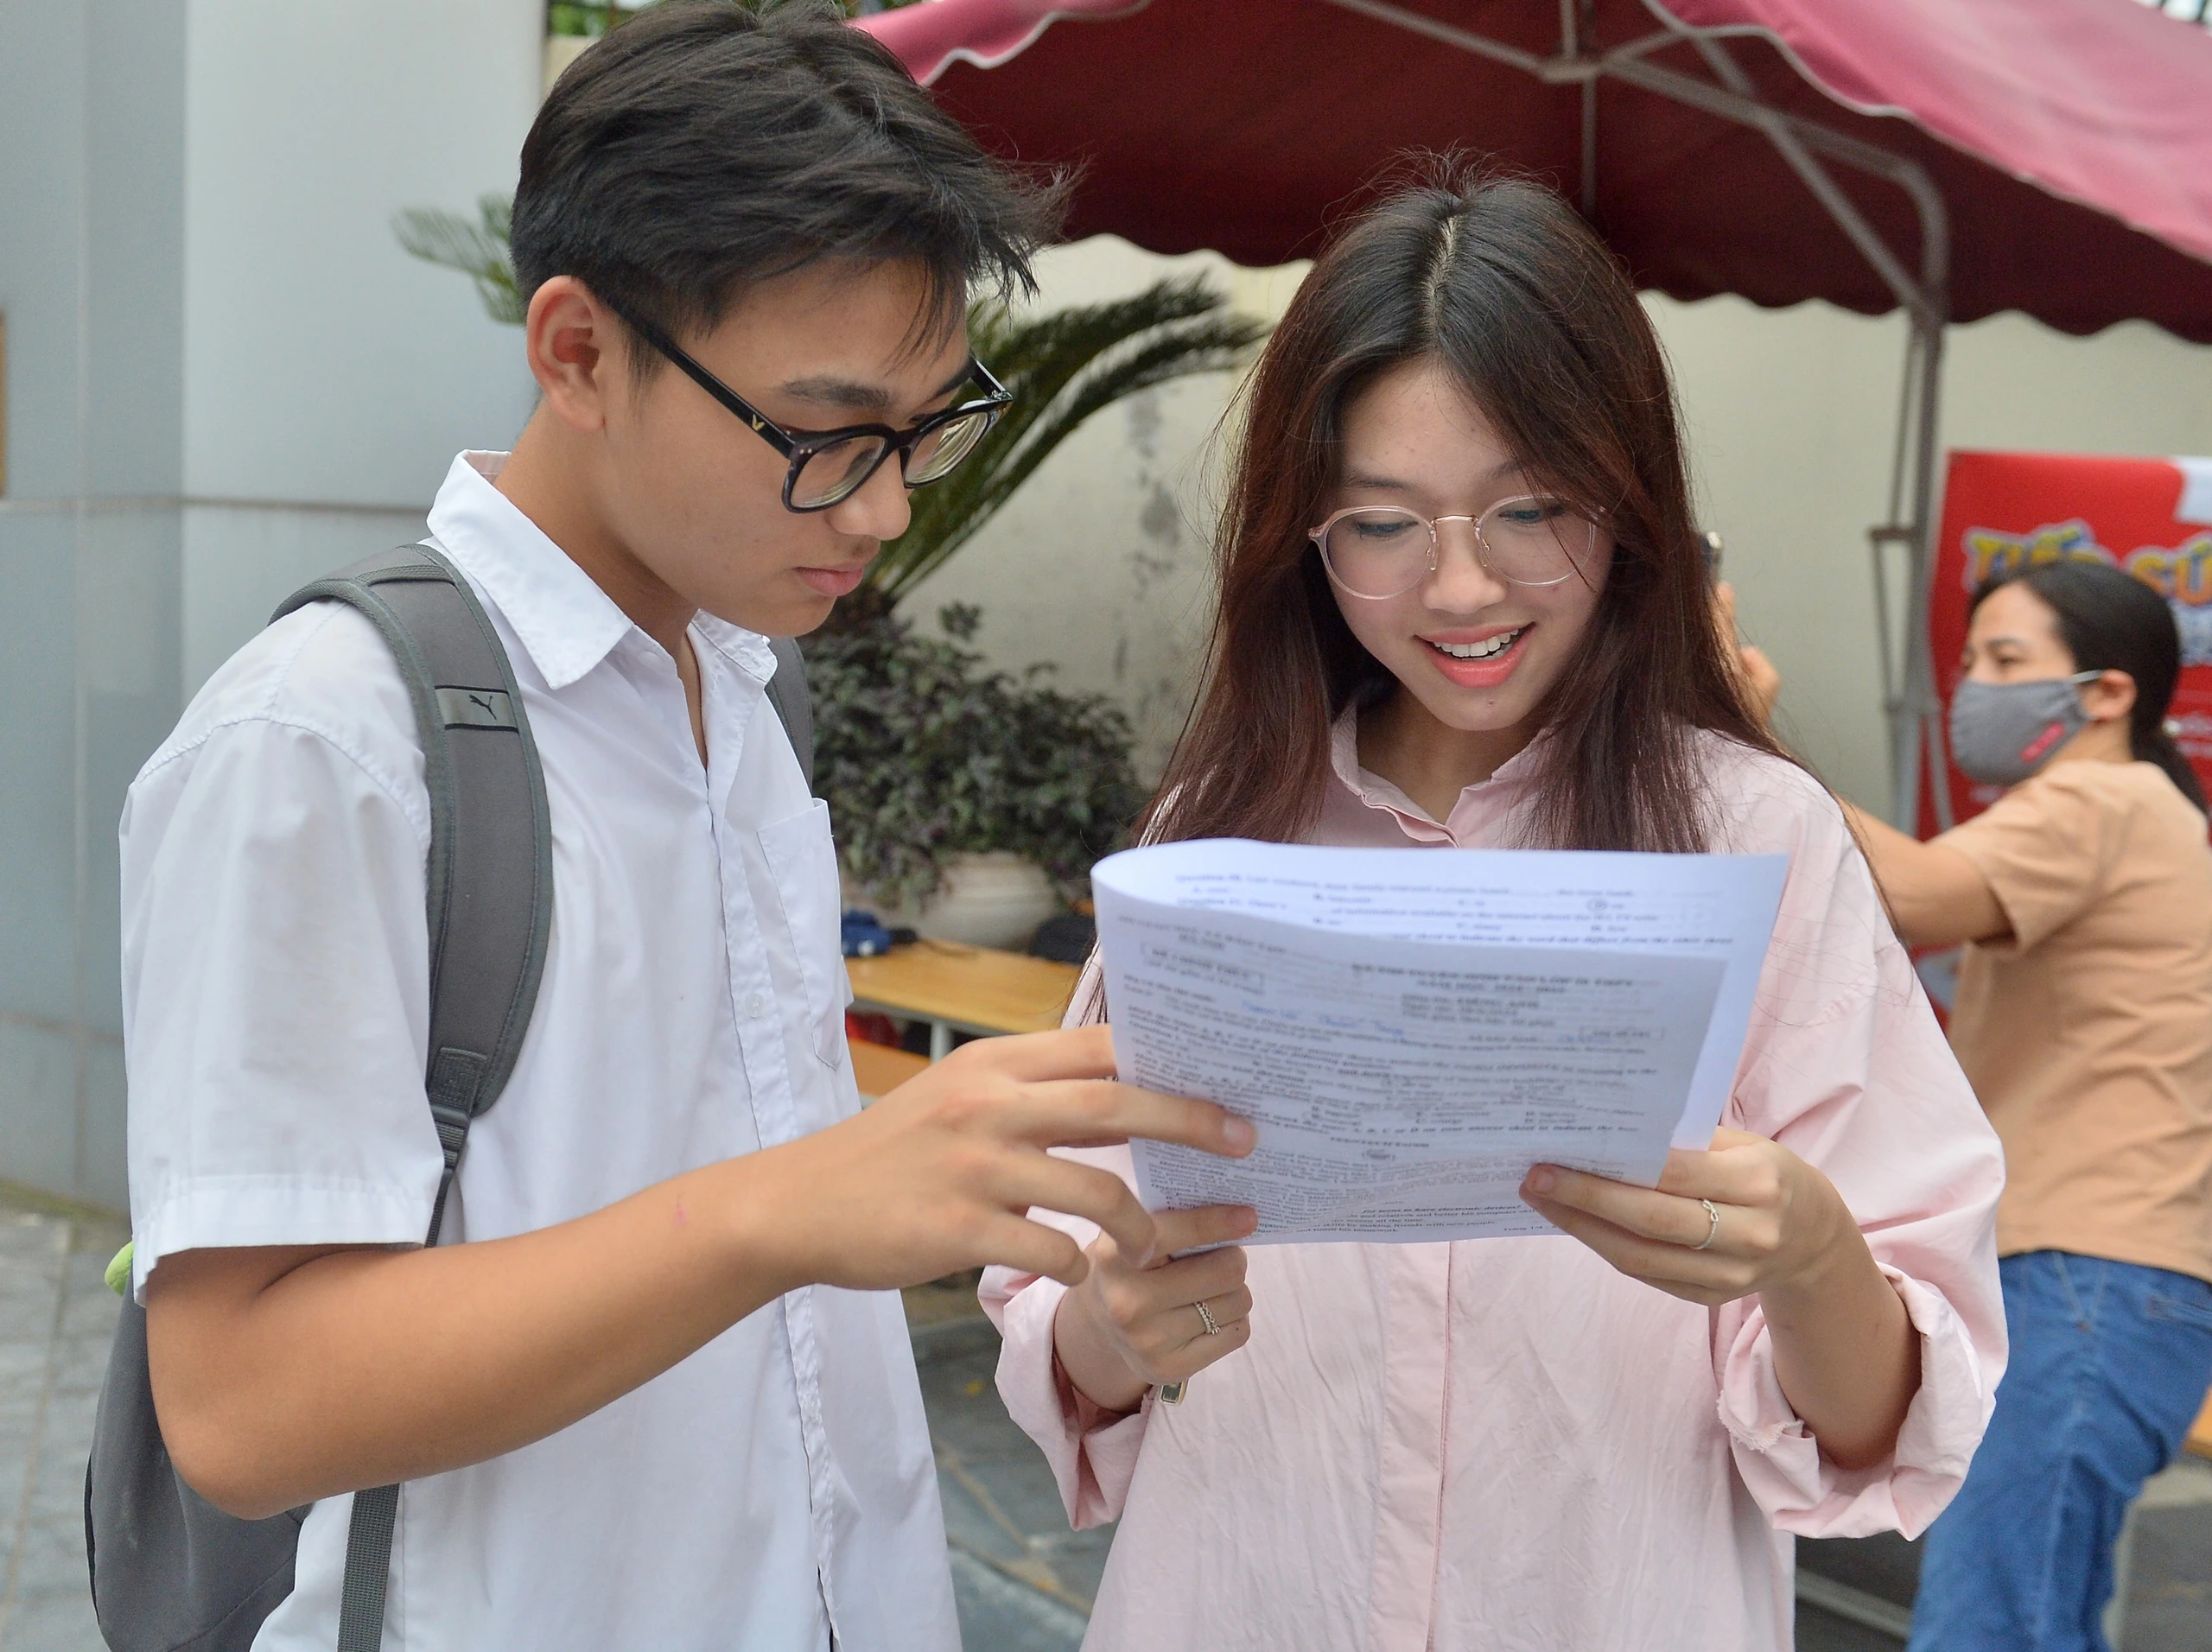 Bài thi vào lớp 10 ở Hà Nội được chấm thế nào?